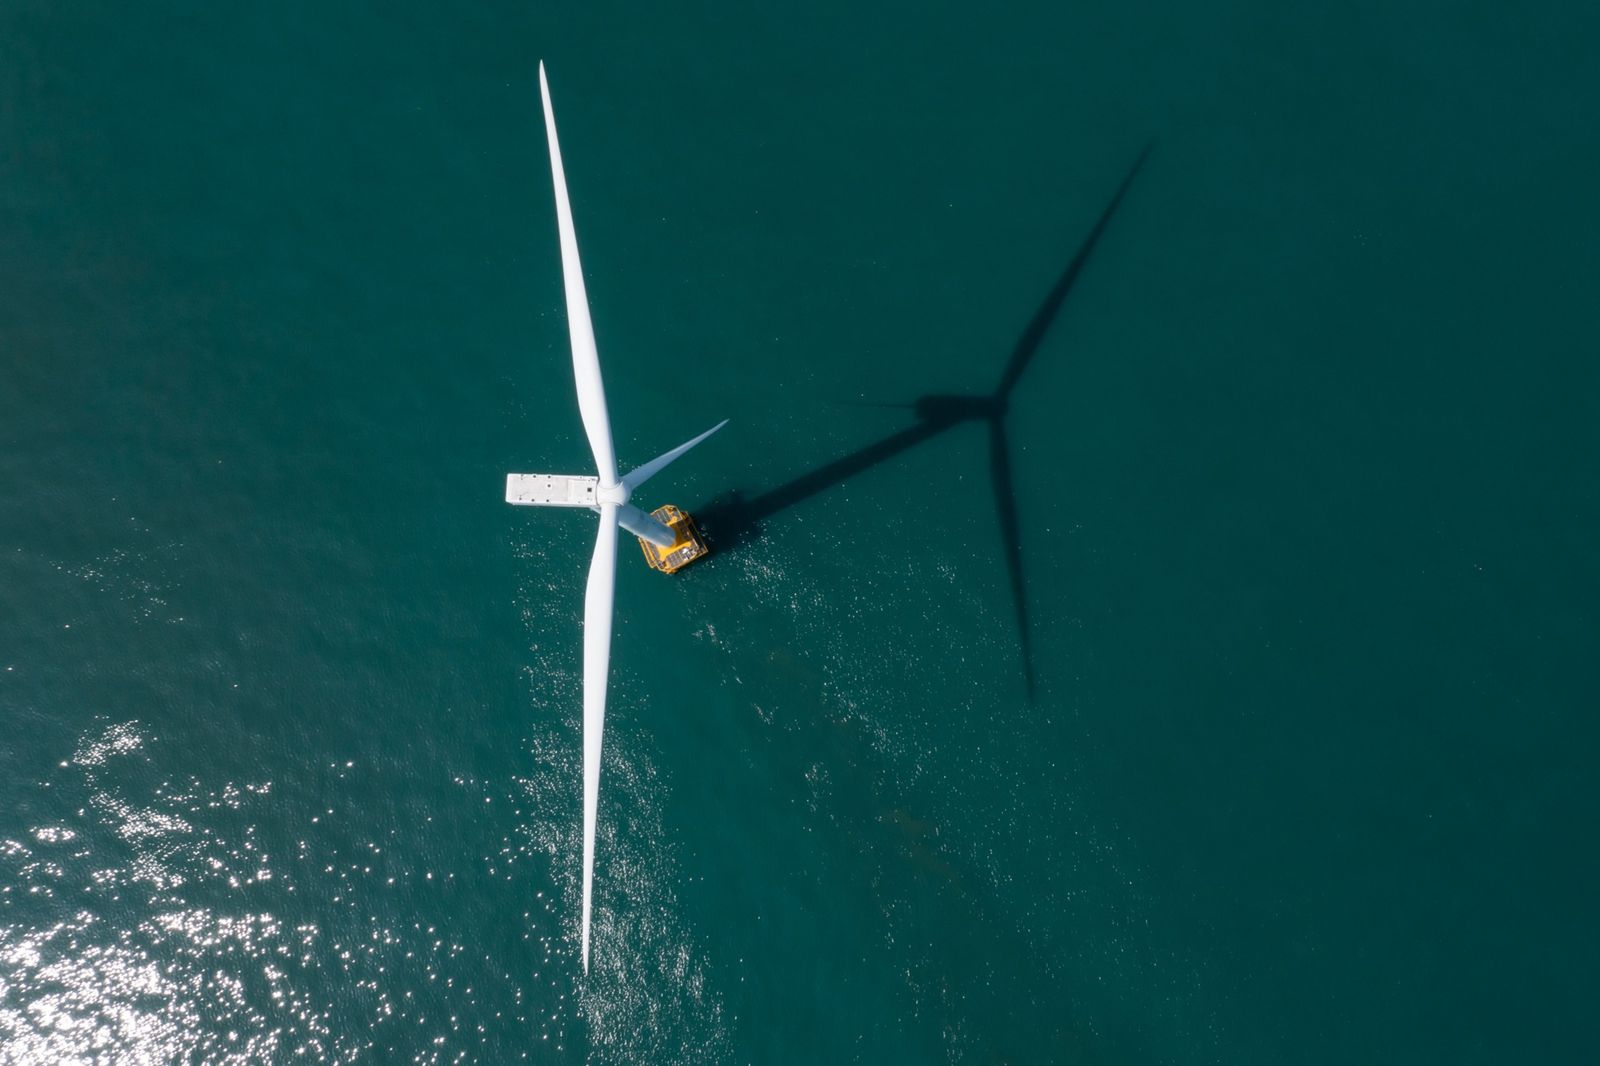 تريليون دولار إنفاق العالم المتوقع على طاقة الرياح البحرية بحلول 2031 